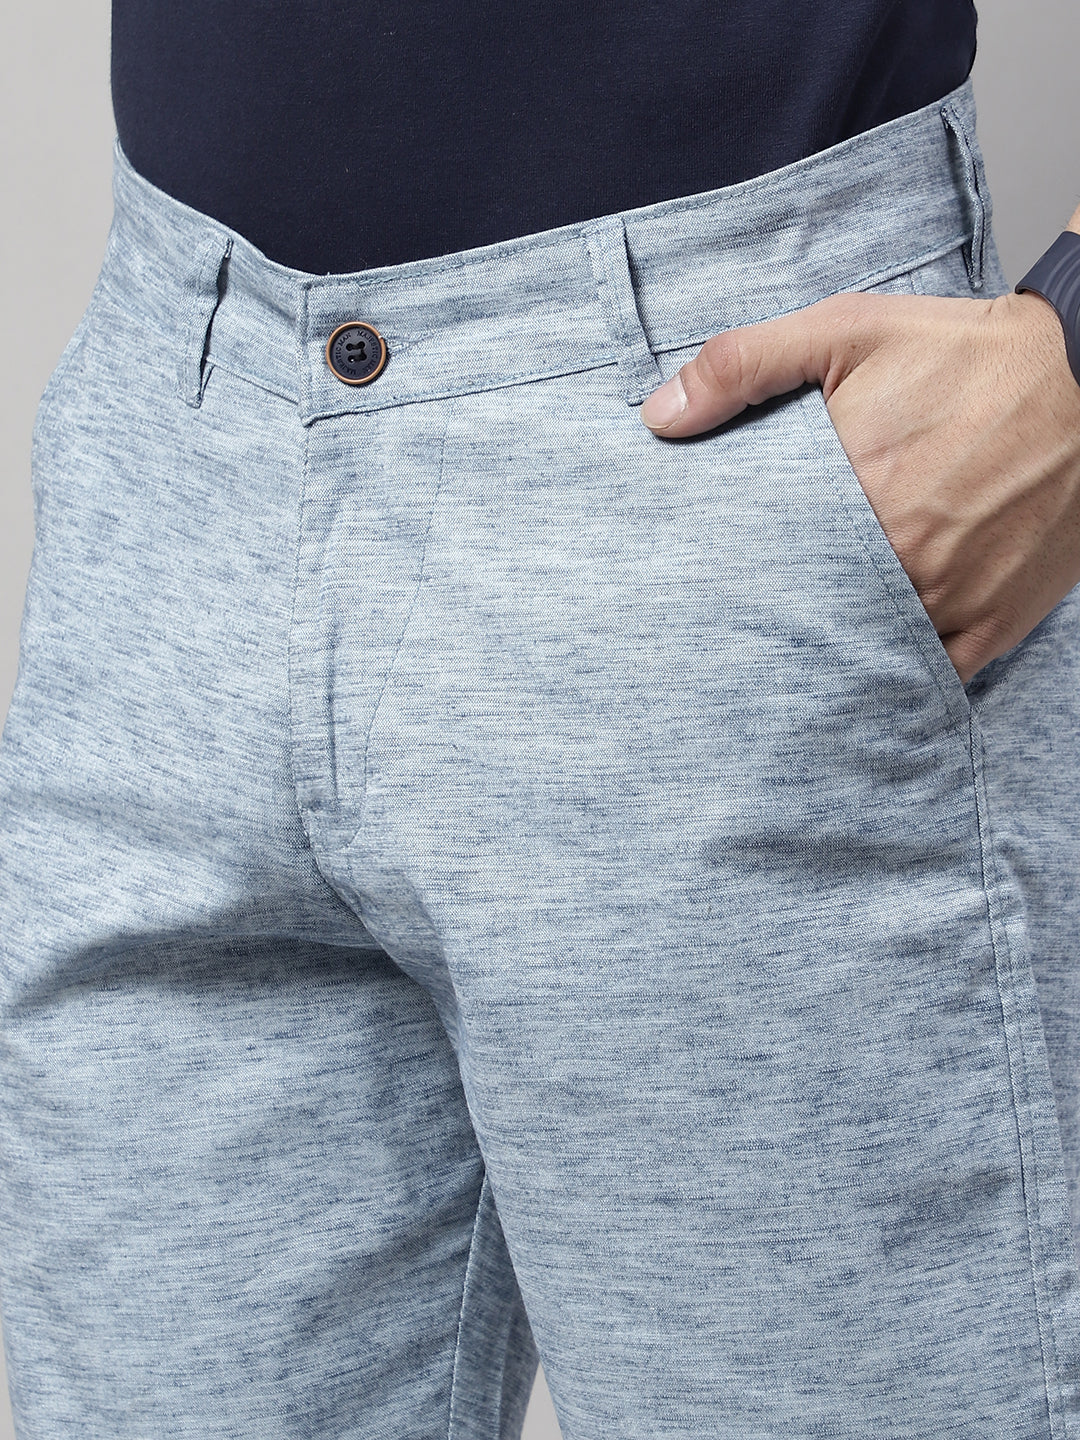 Trendsetting Men's Shorts - BLUE